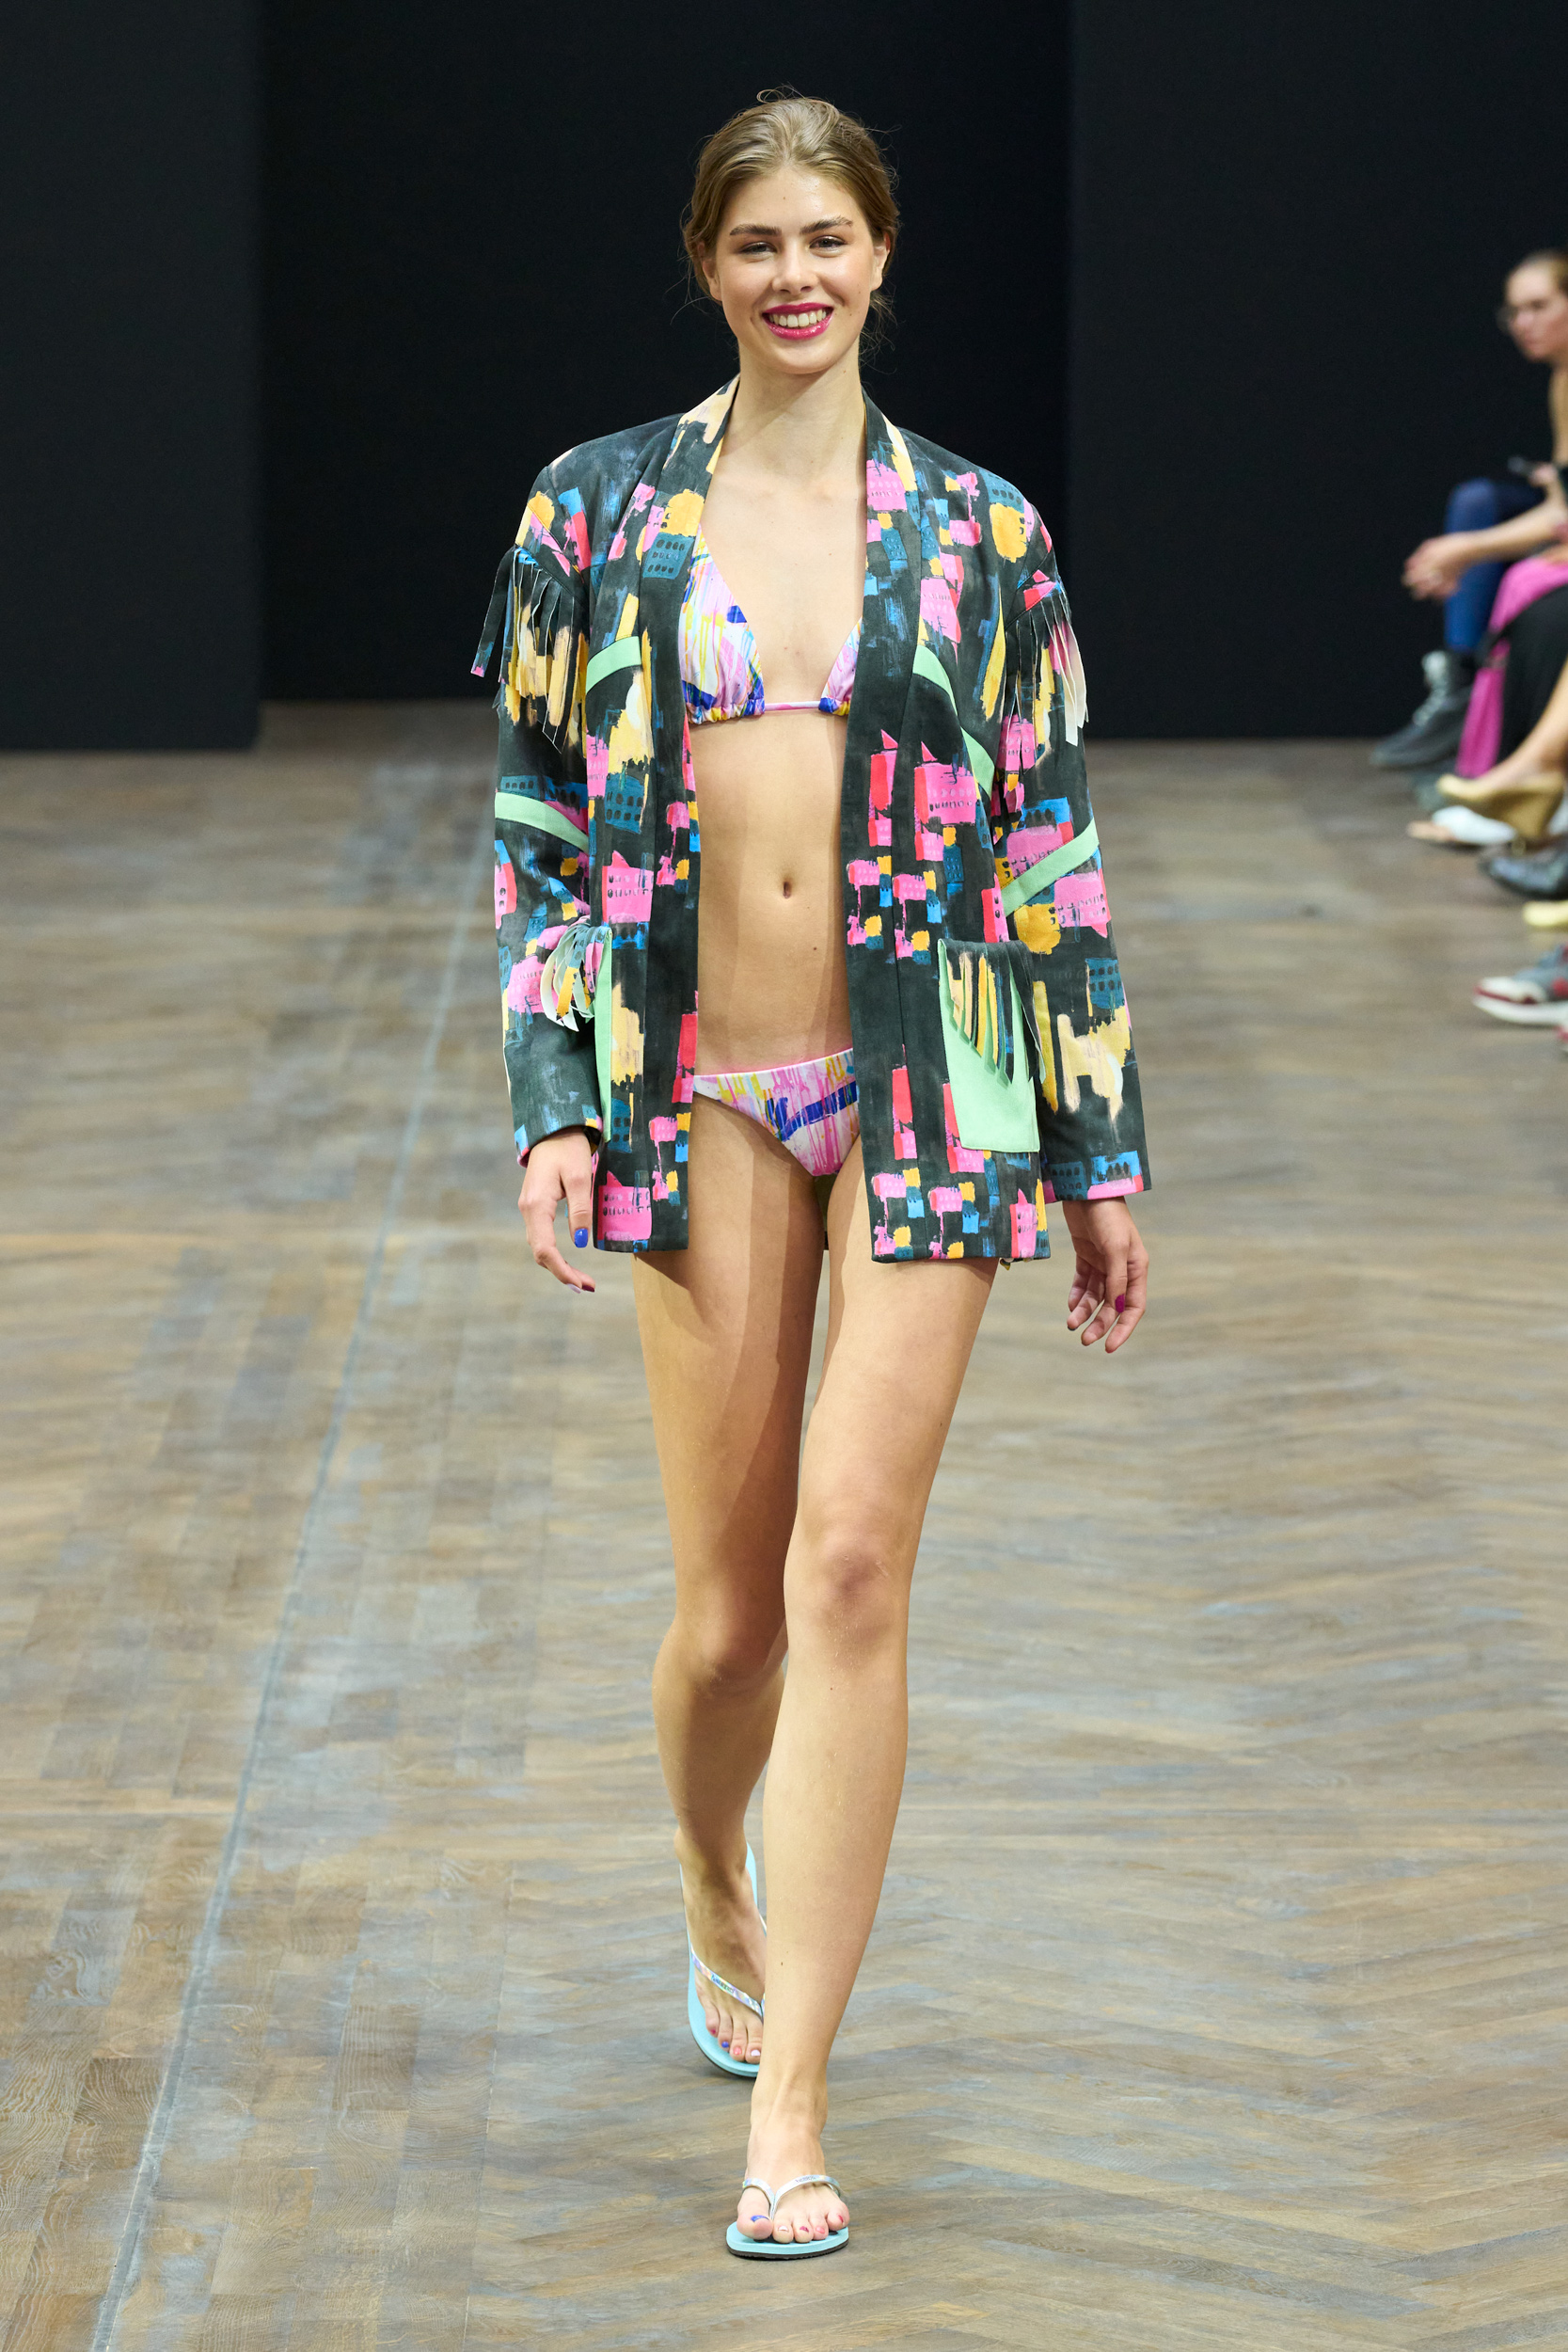 Malune By Frida Weyer Spring 2023 Fashion Show 